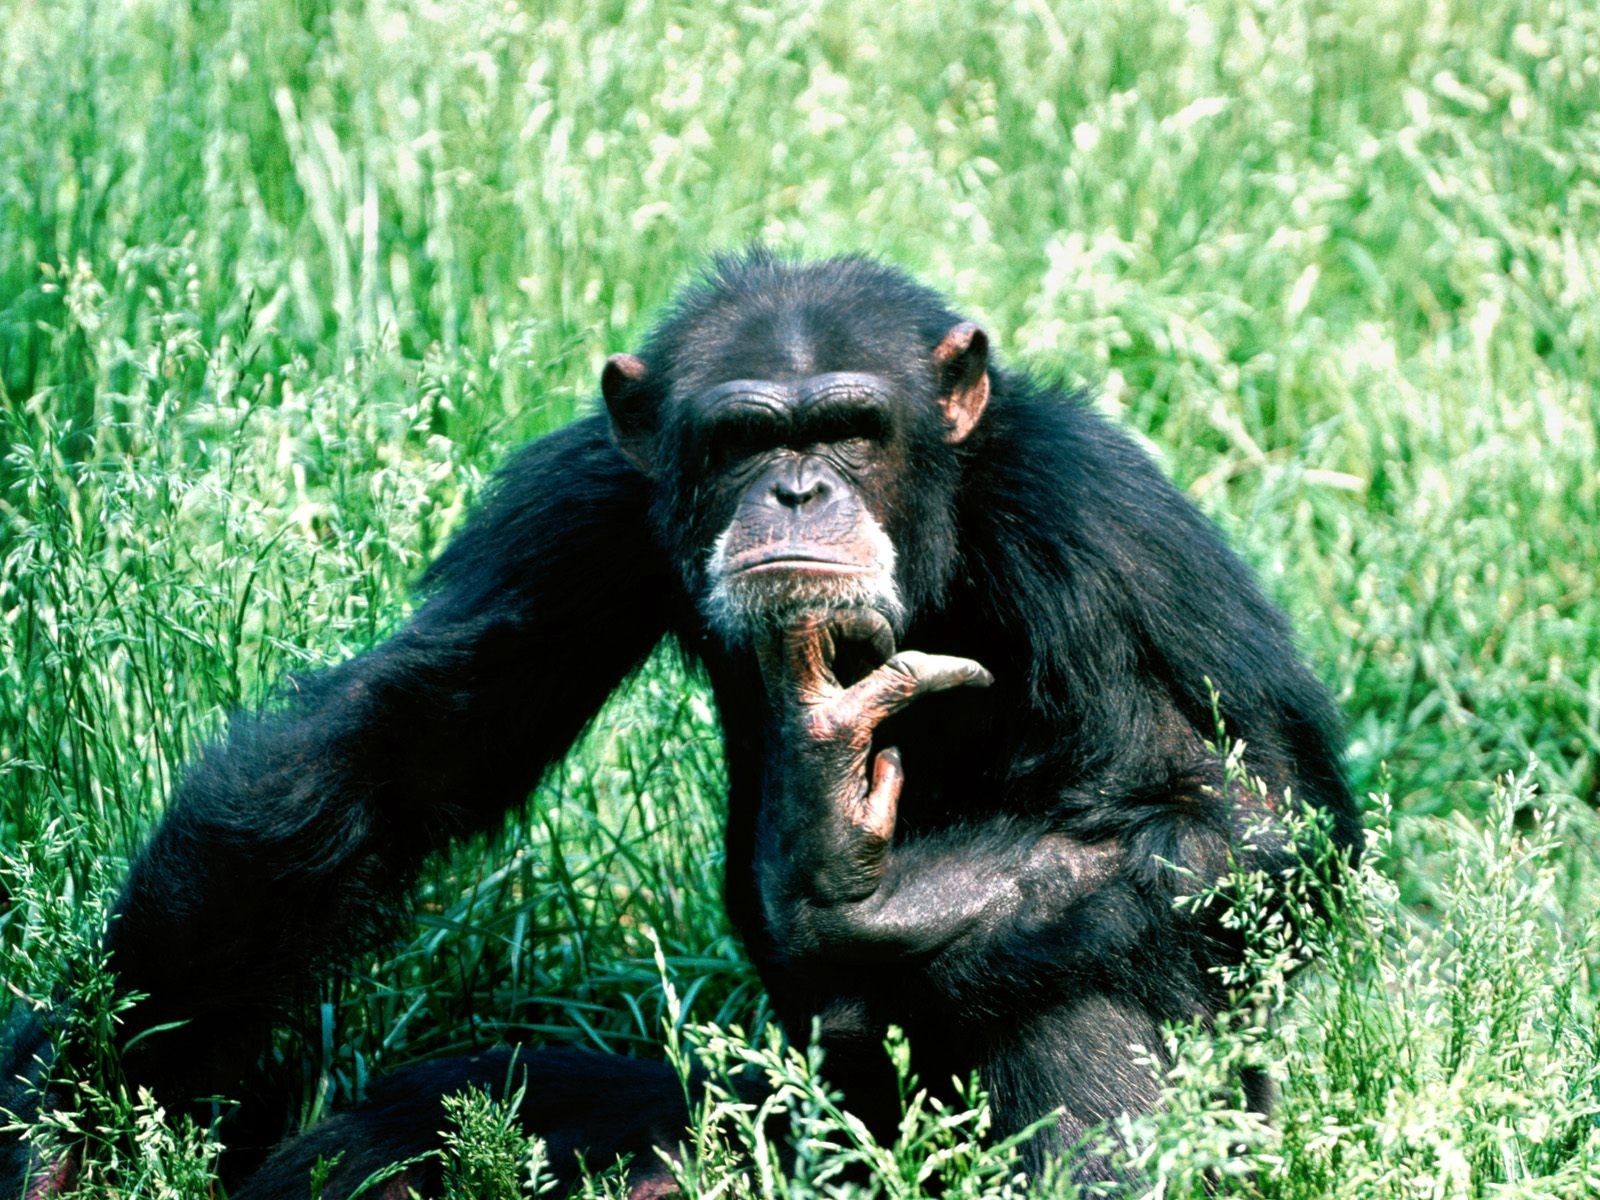 Скачать обои Шимпанзе на телефон бесплатно